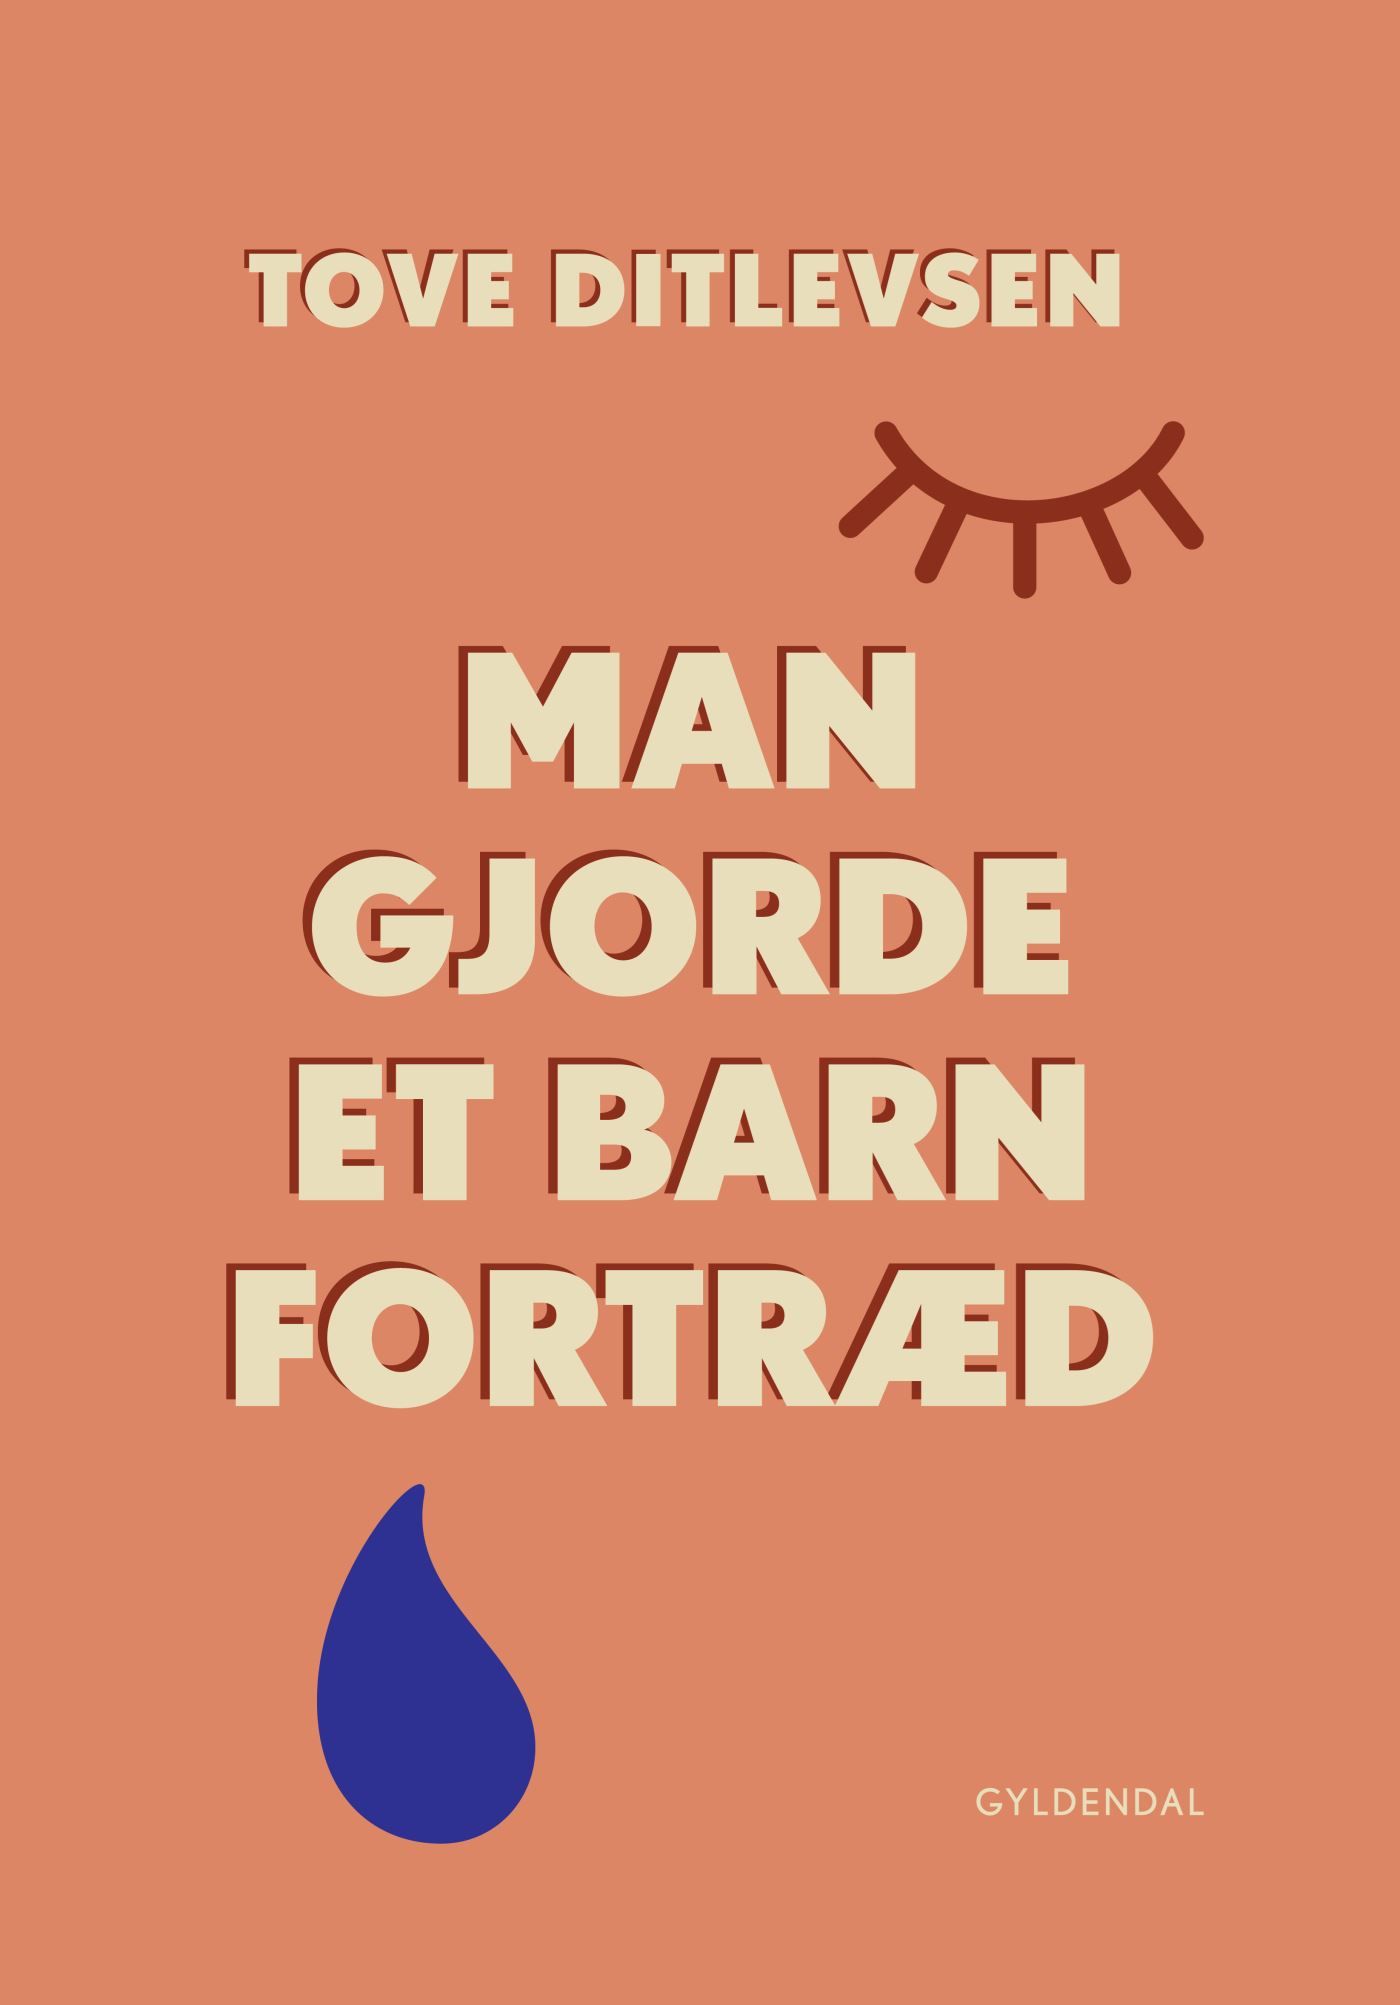 Man gjorde et barn fortræd, audiobook by Tove Ditlevsen